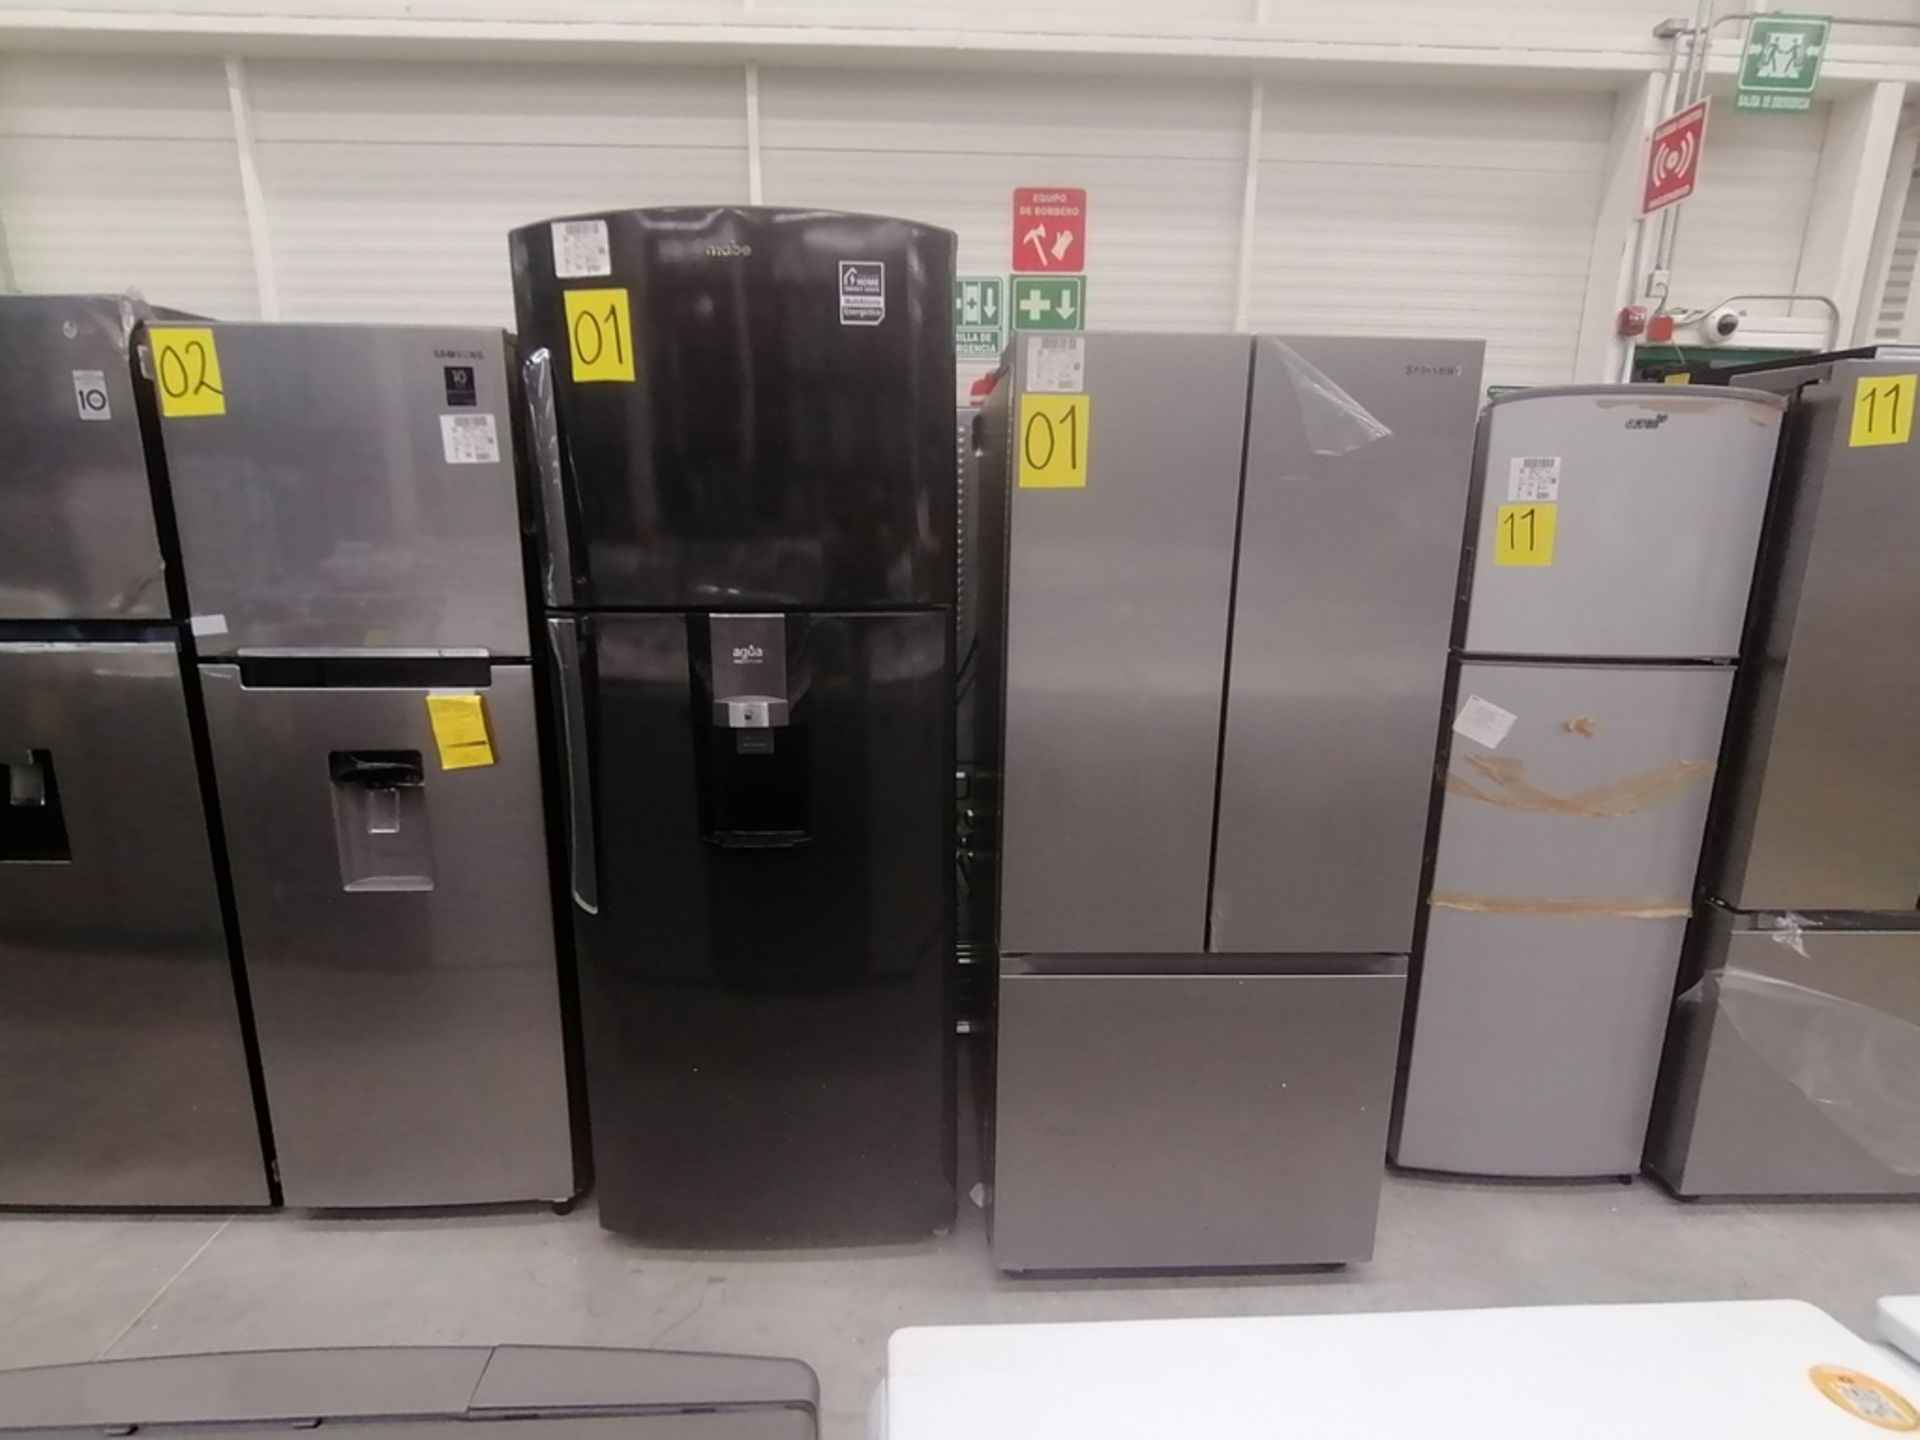 Lote de 2 refrigeradores incluye: 1 Refrigerador, Marca Samsung, Modelo RT22A401059, Serie 8BA84BBR - Image 3 of 15